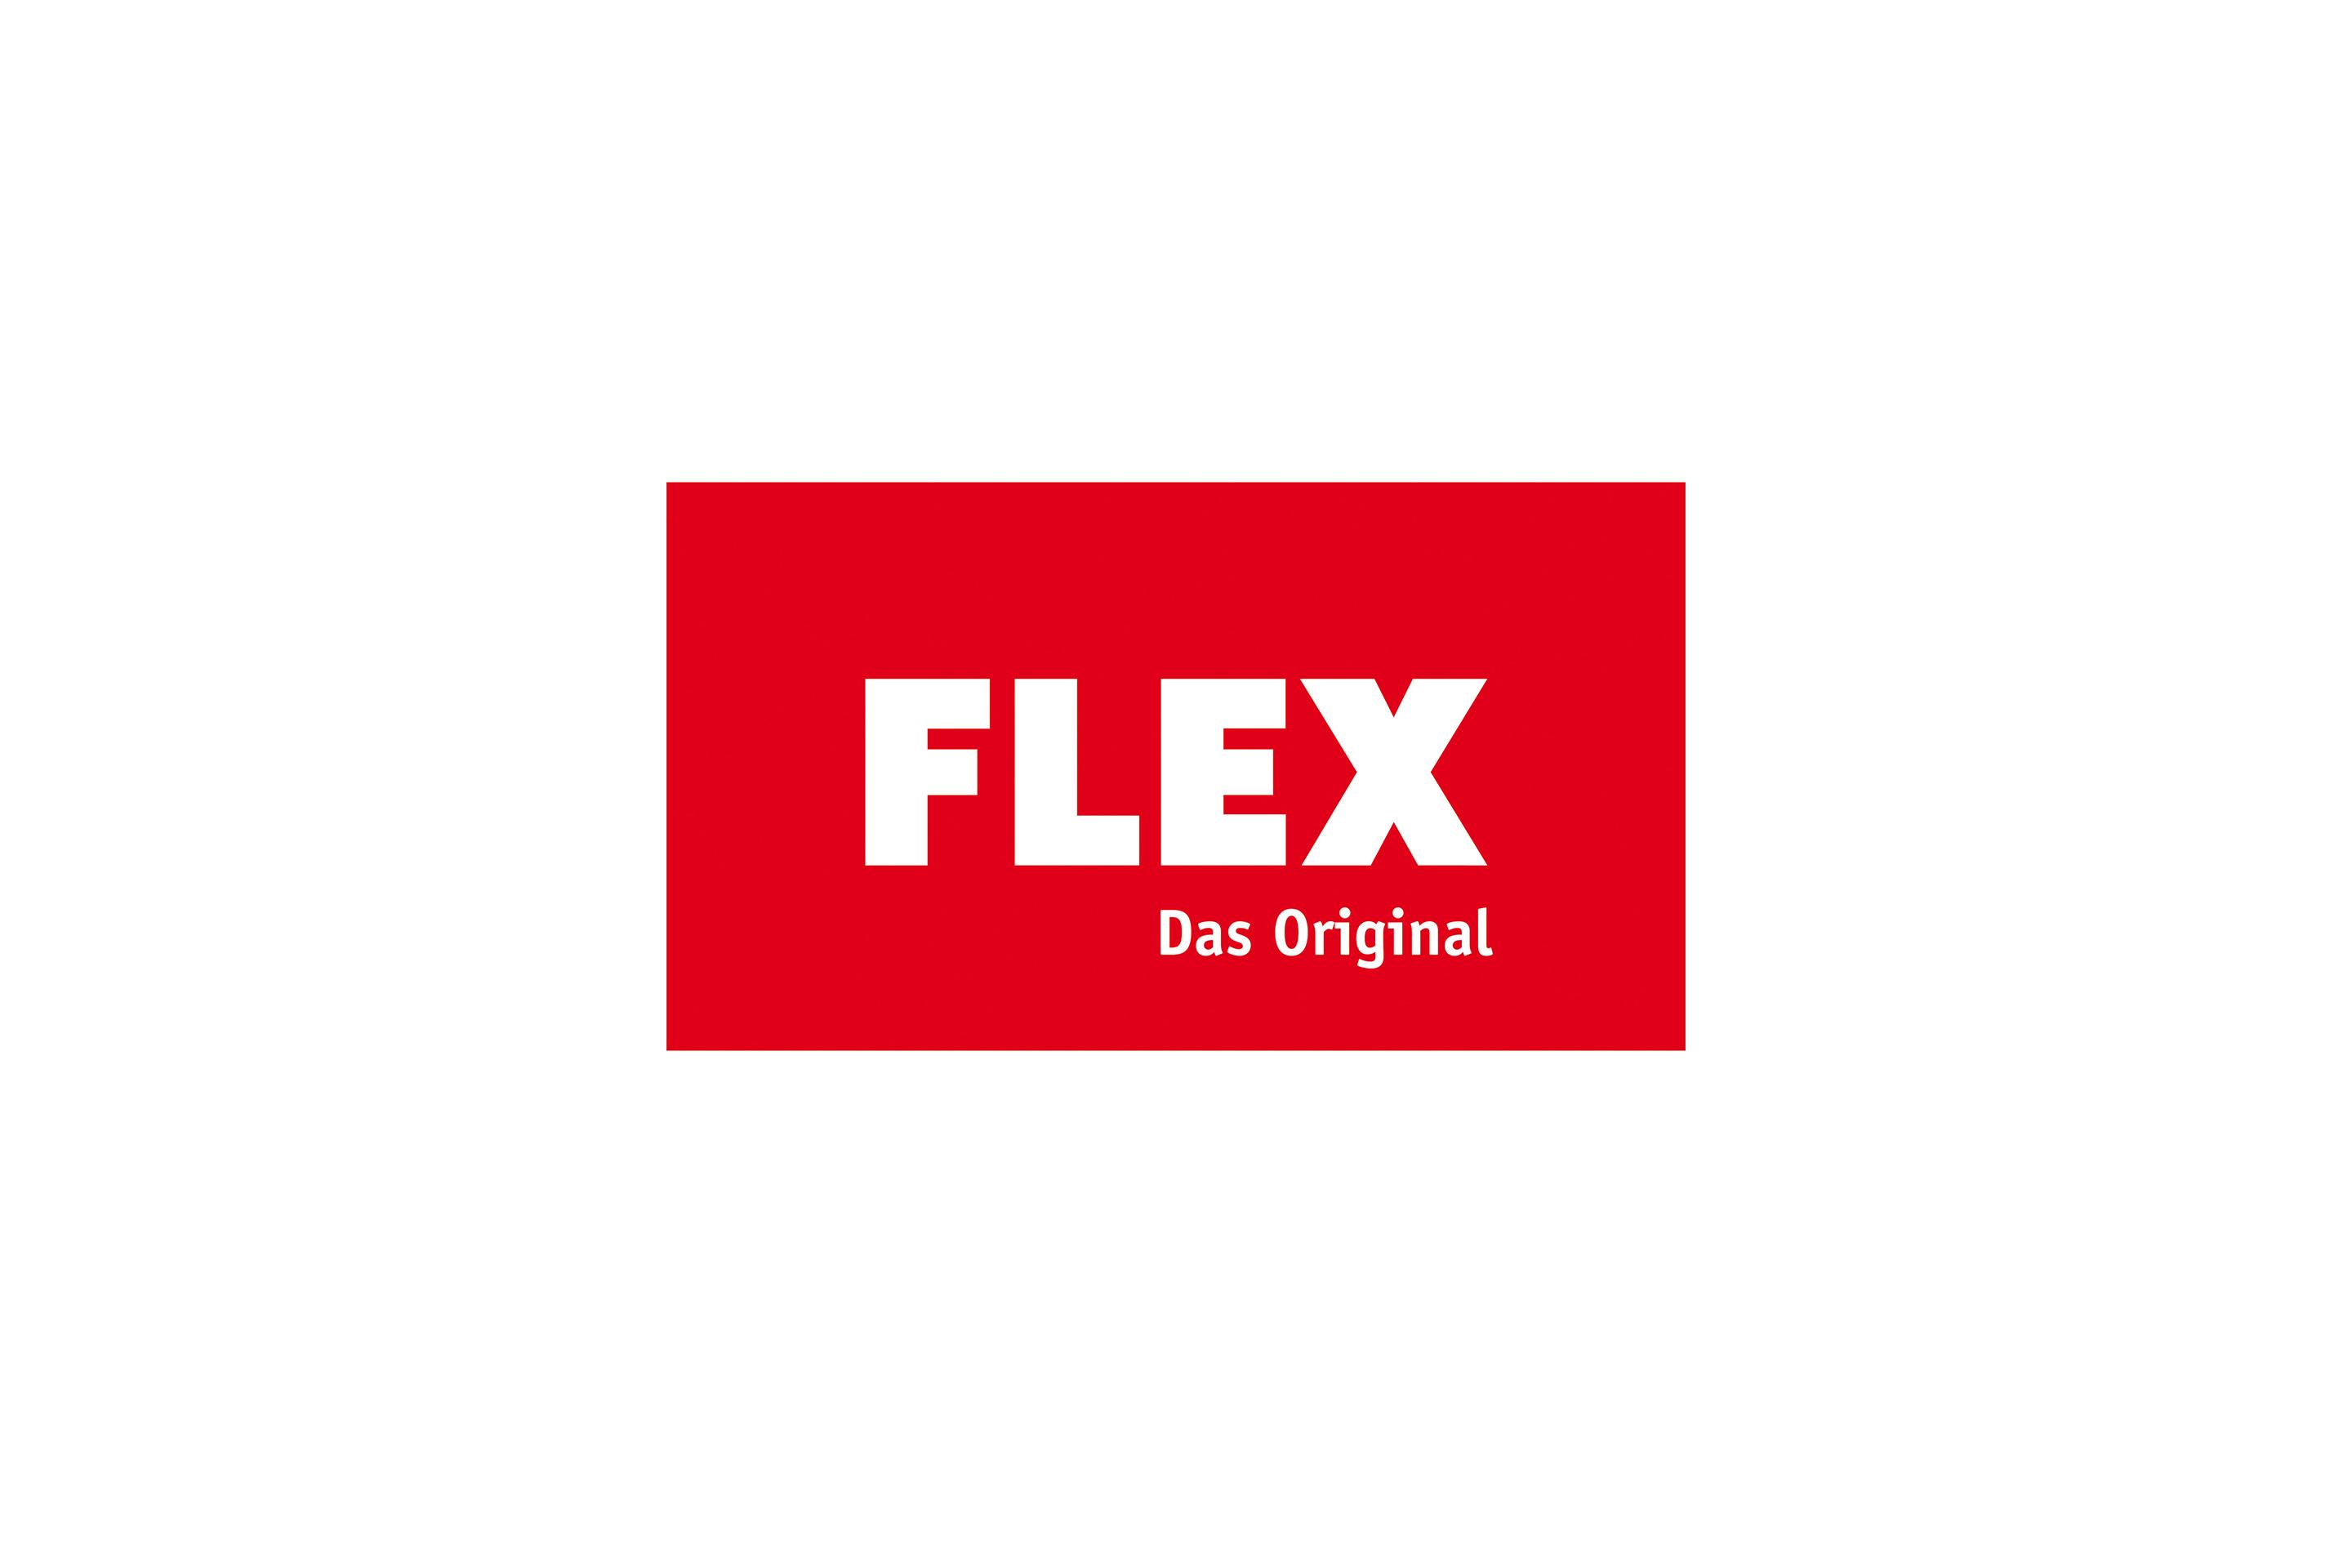 FLEX The original logo History